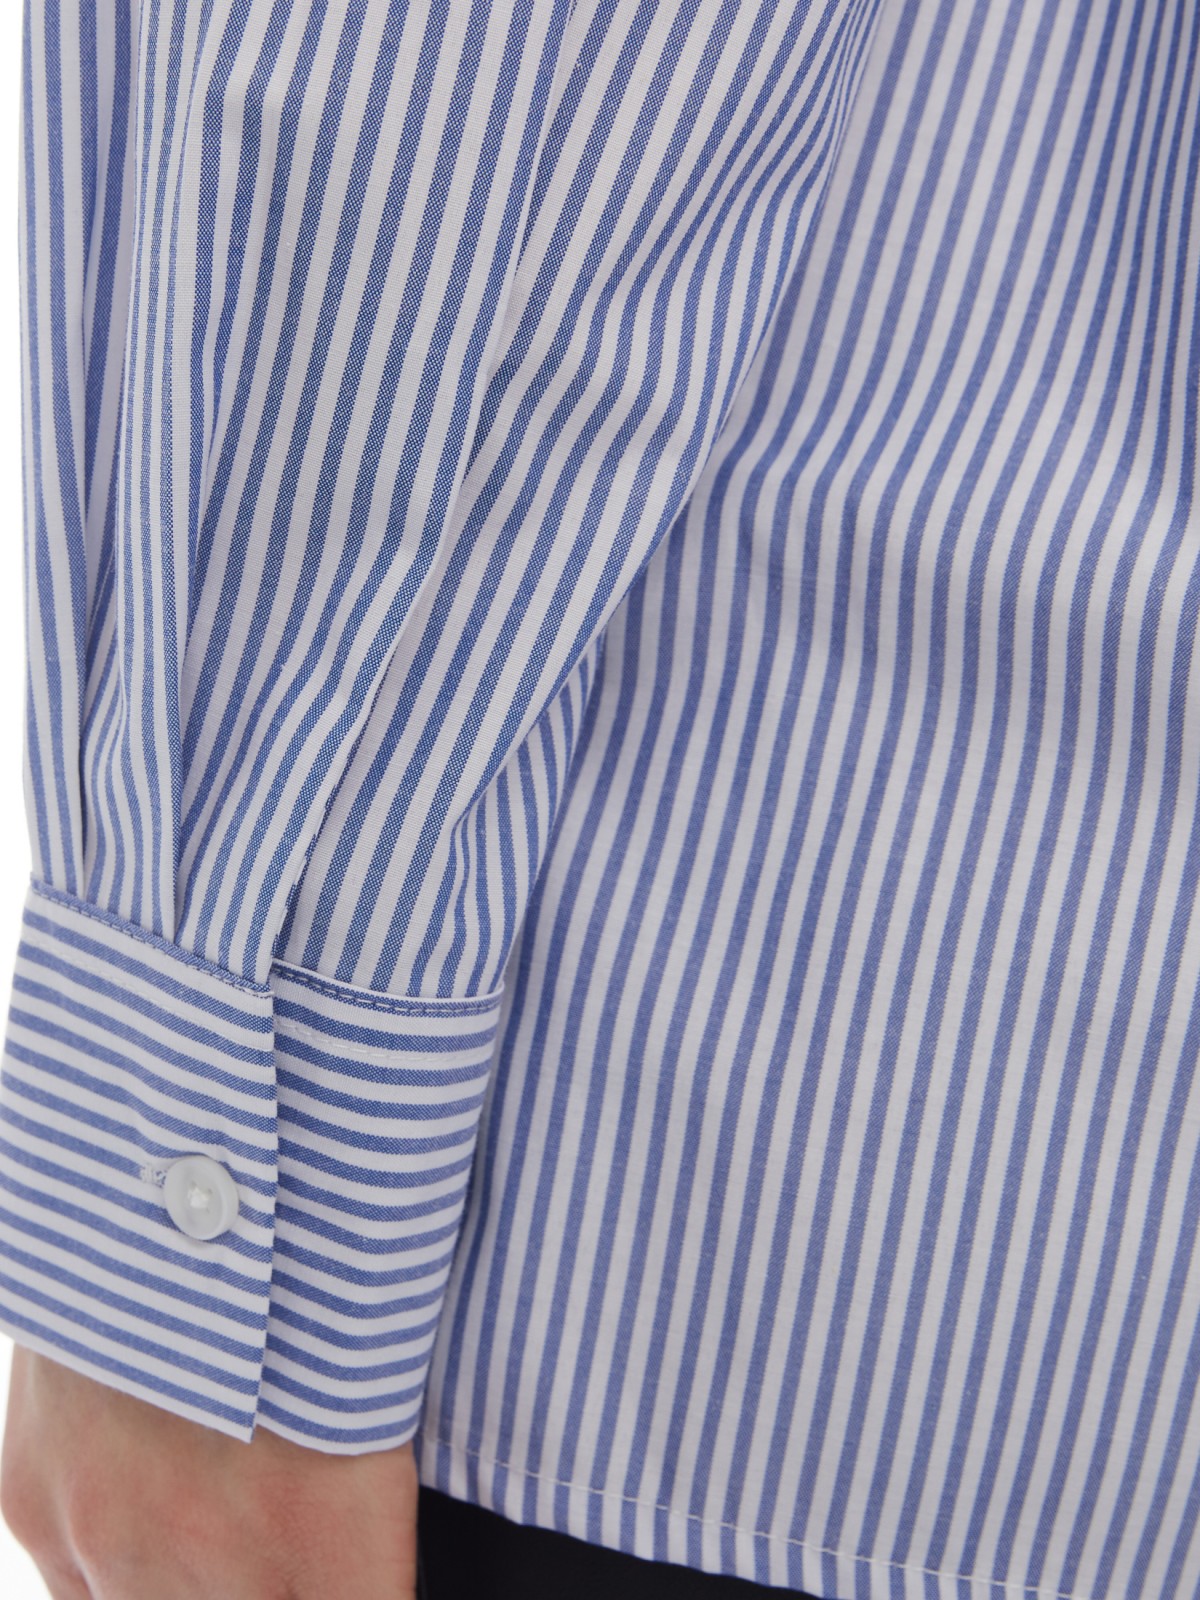 Блузка-рубашка в спортивном стиле с узором в полоску zolla 024131159053, цвет светло-голубой, размер XS - фото 5